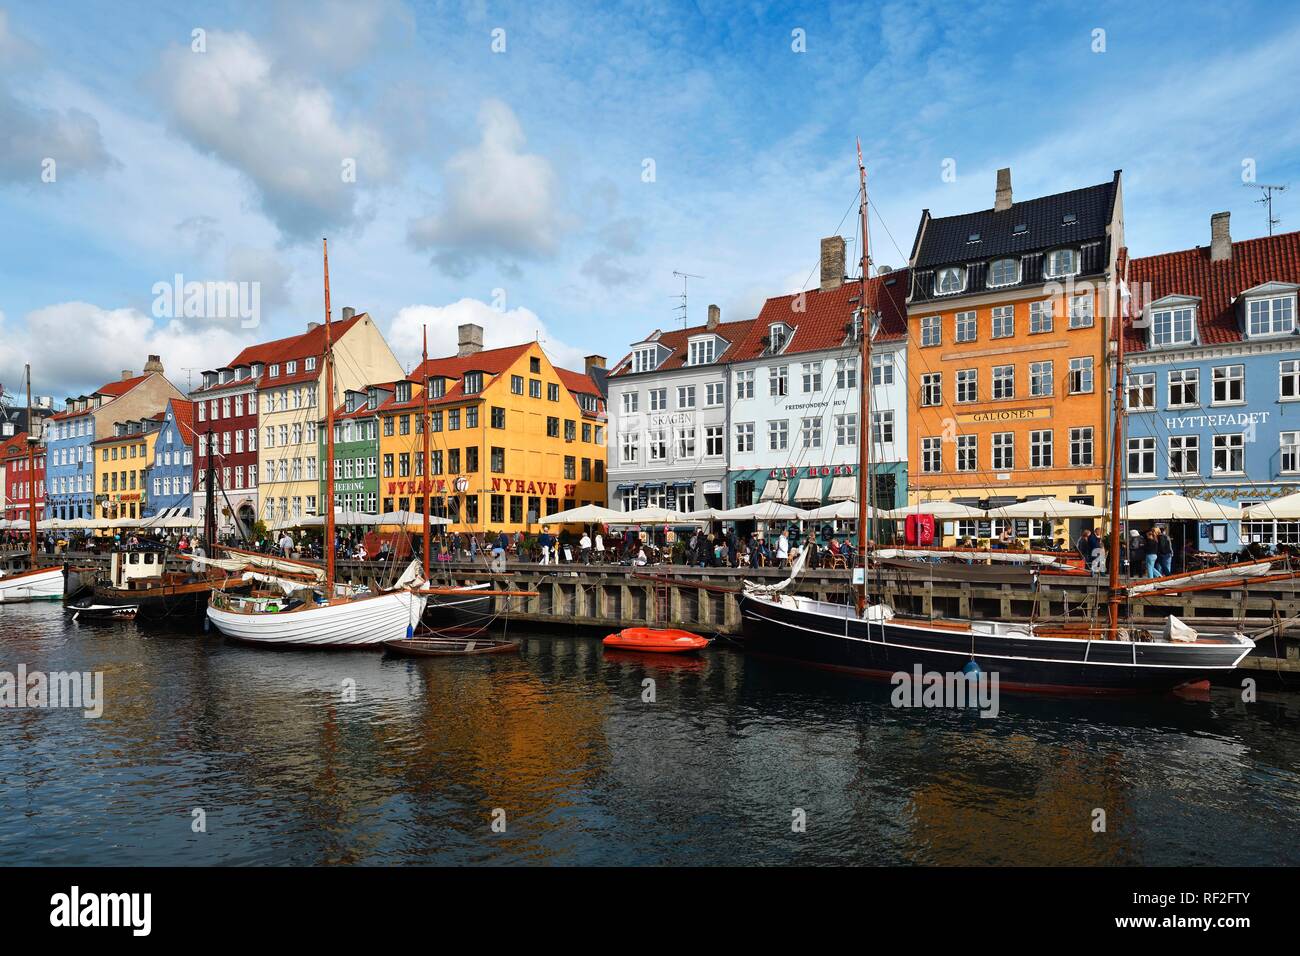 Segelboote auf dem Kanal vor bunten Häuserfassaden, Entertainment District, Nyhavn, Kopenhagen, Dänemark Stockfoto